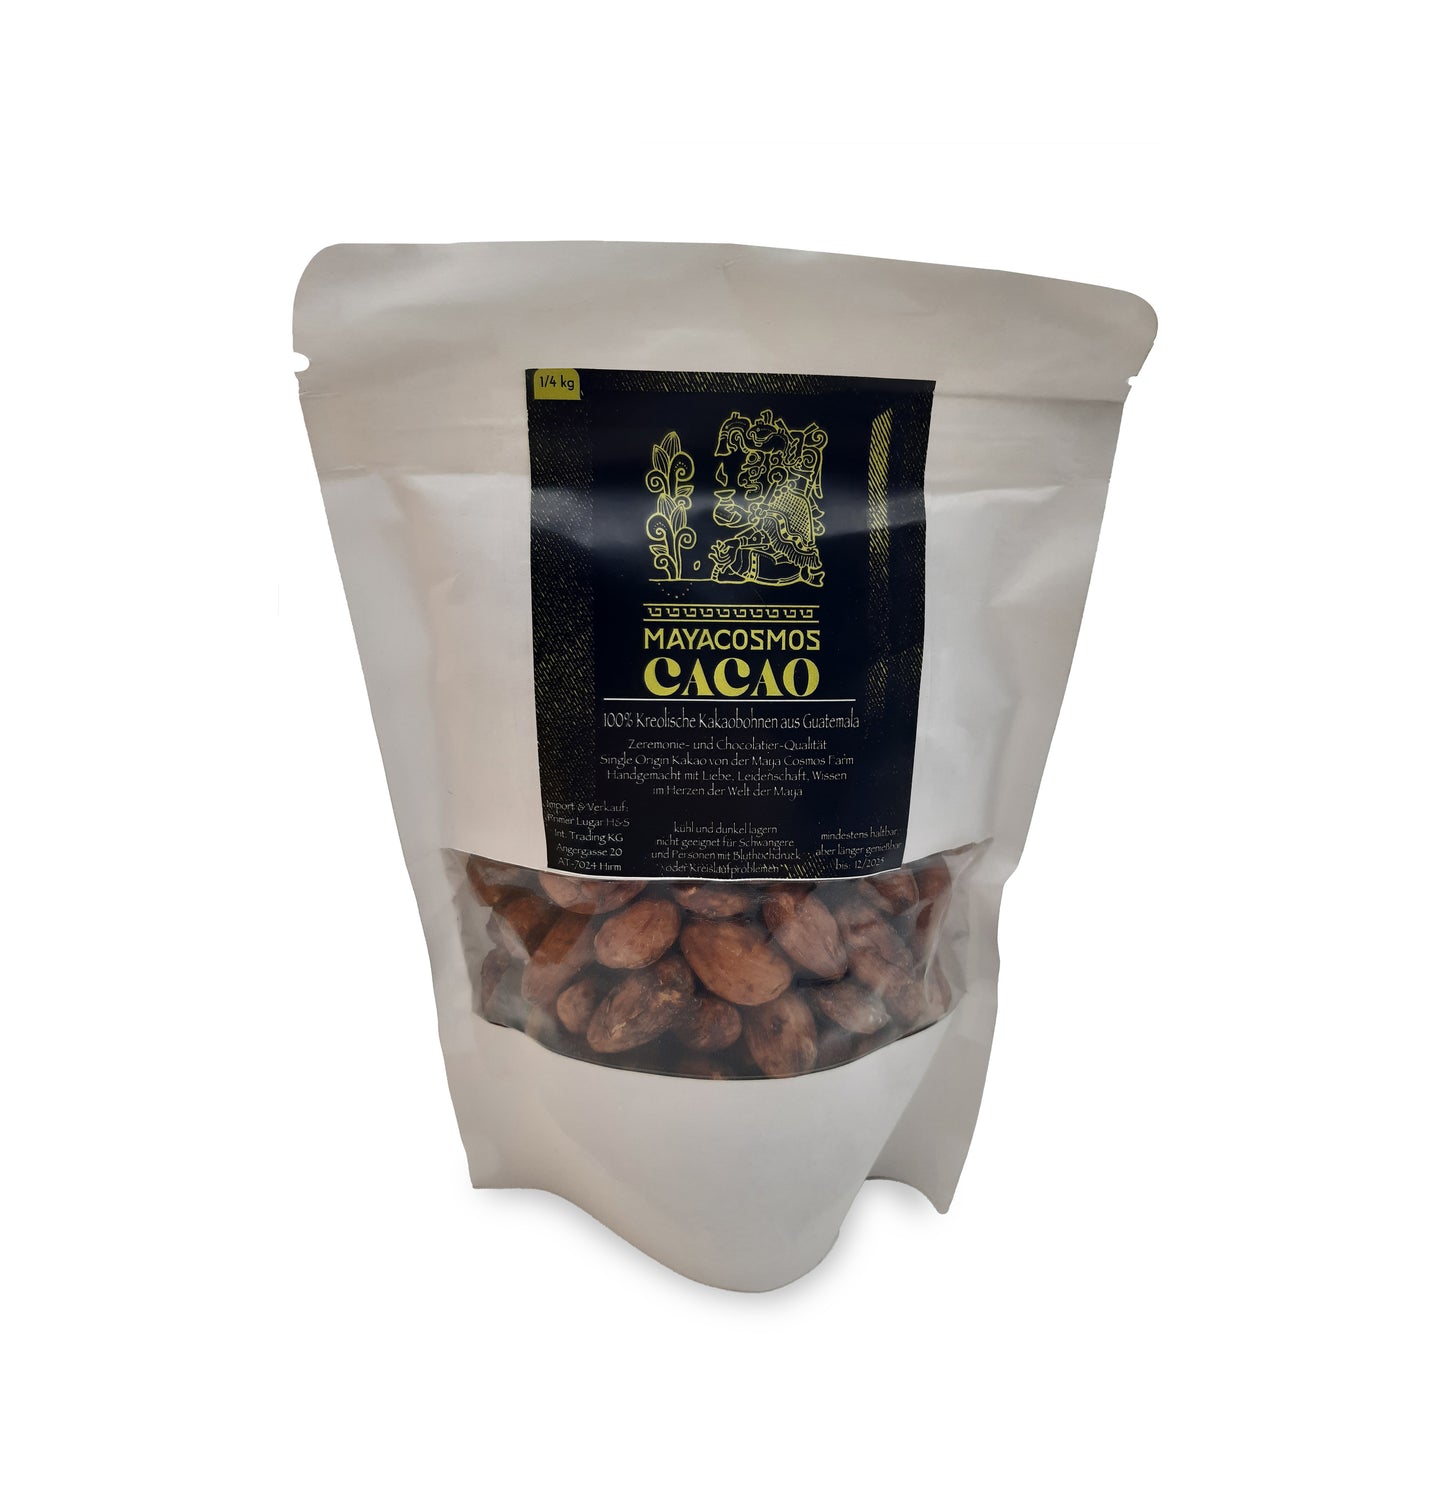 Maya Cosmos Criollo cocoa beans